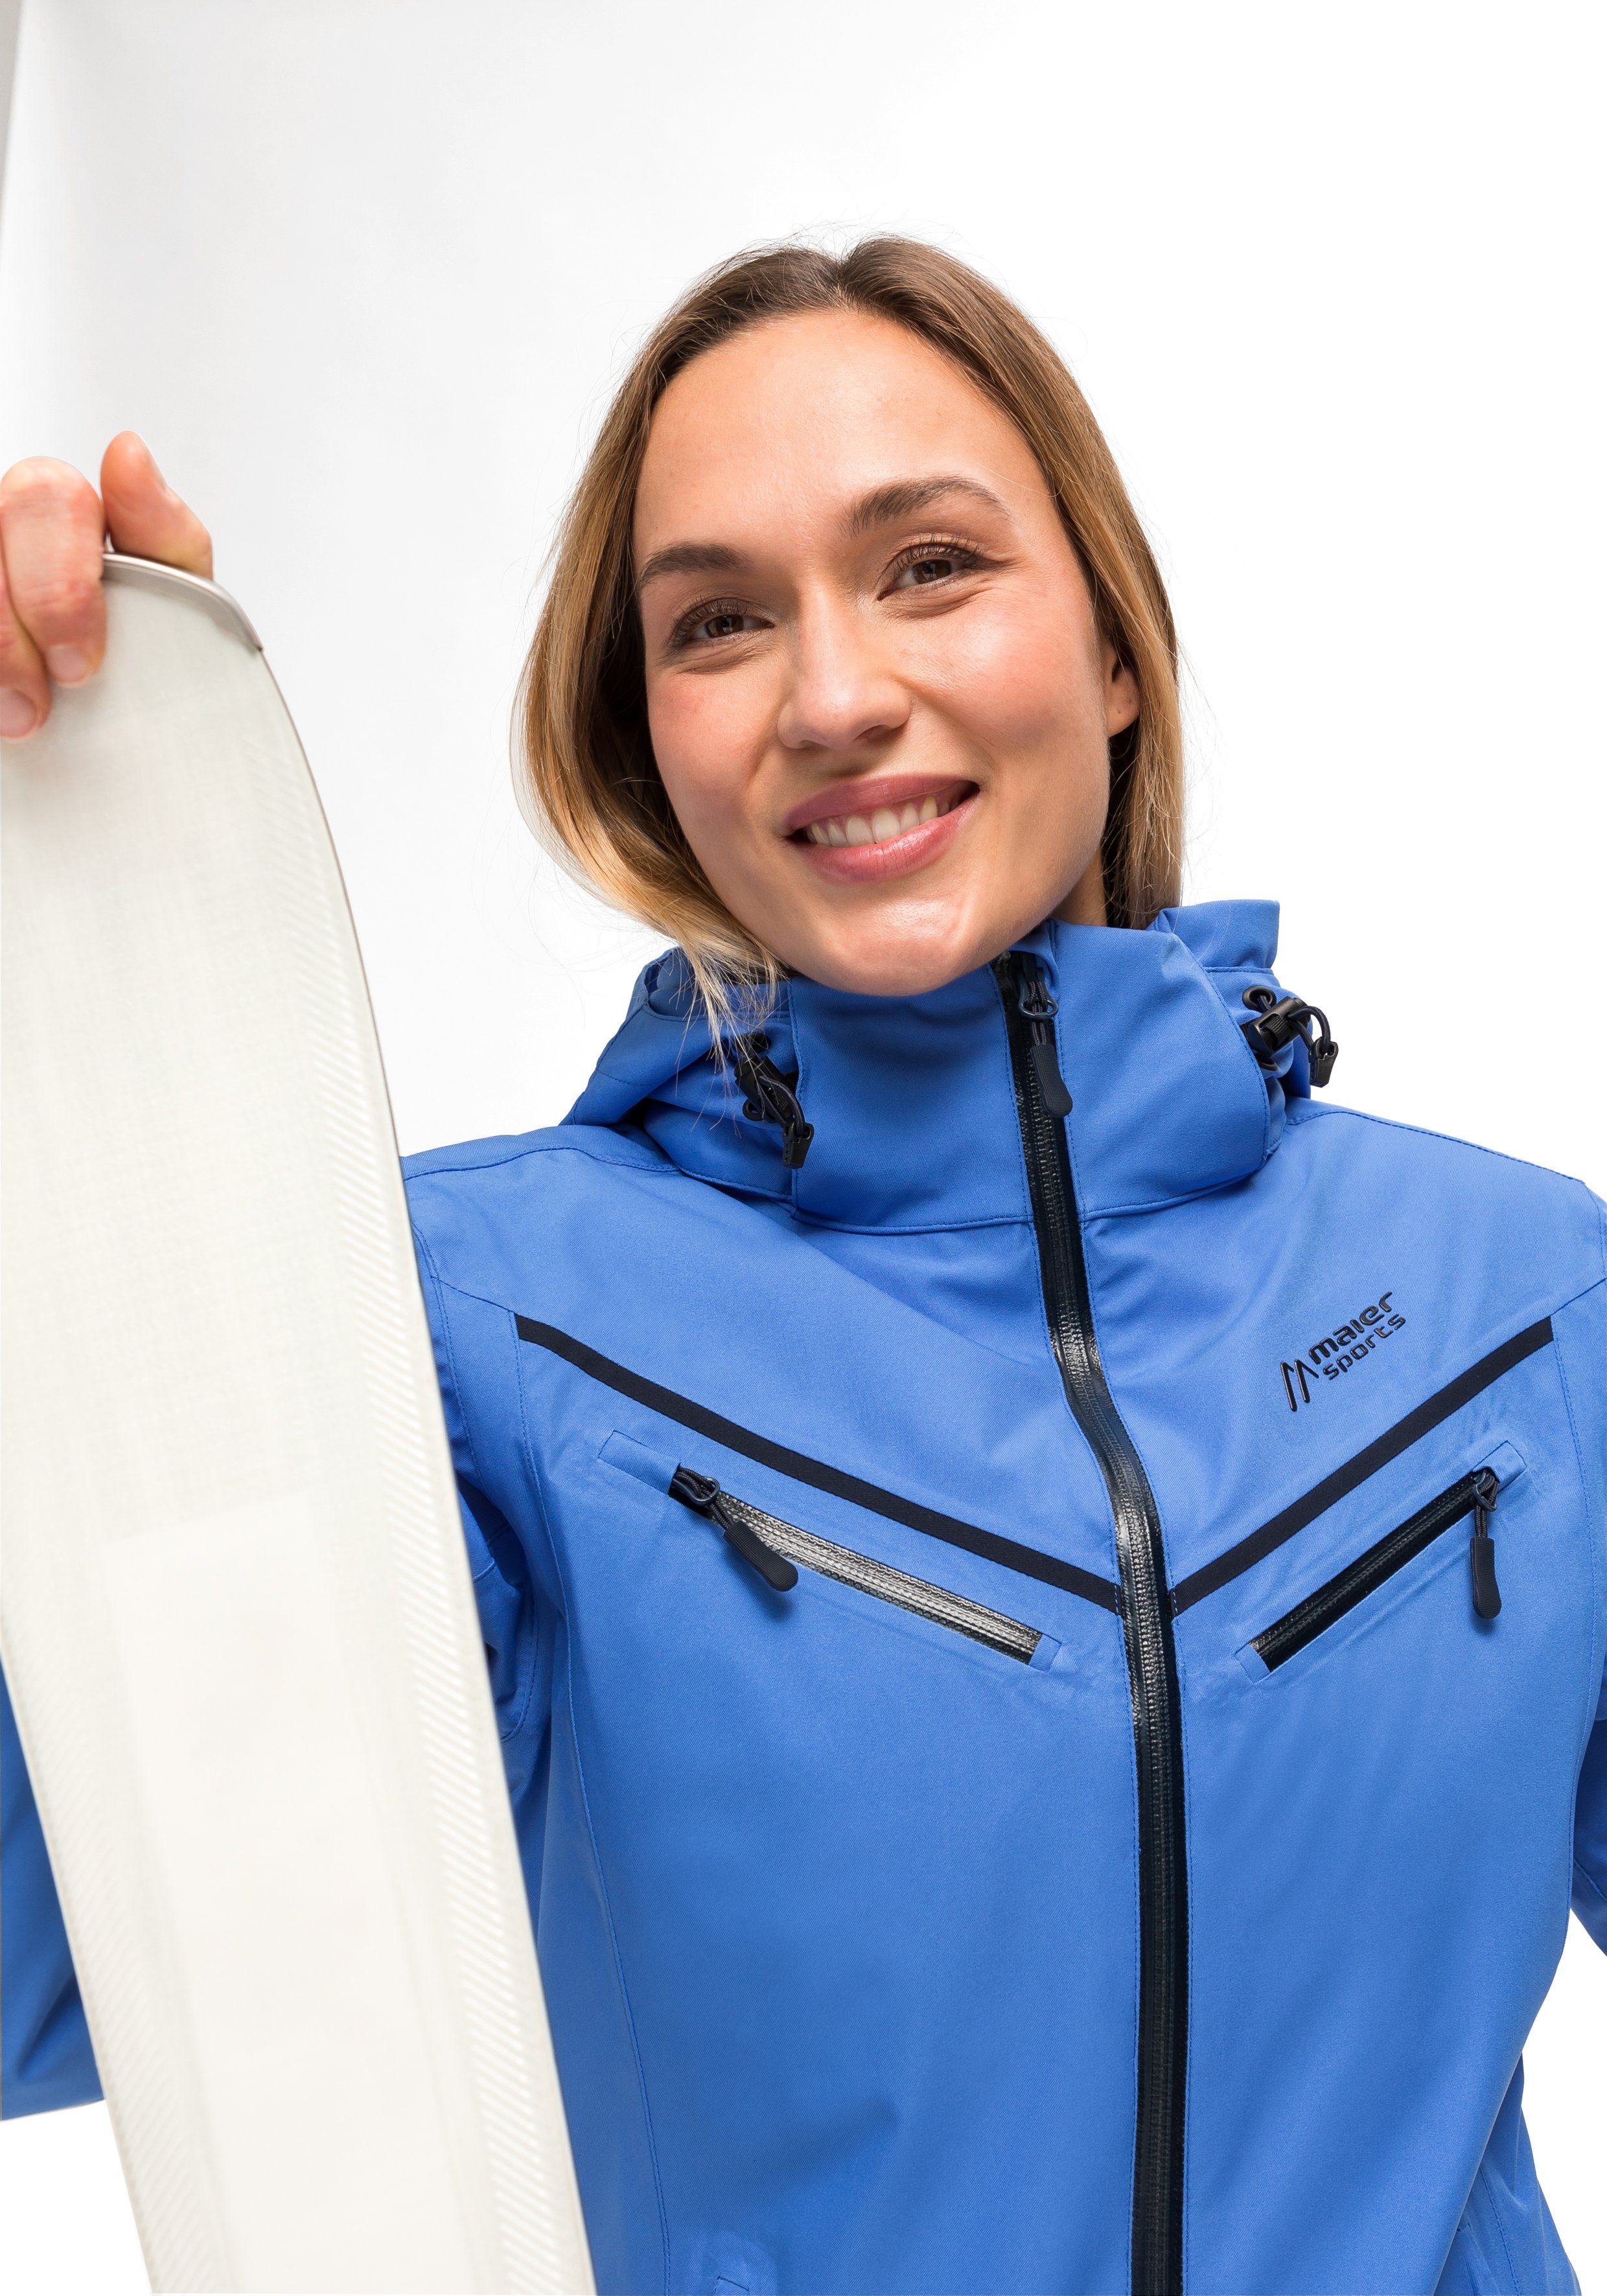 Ski-Jacke, winddichte atmungsaktive pastellblau Sports Lunada Maier wasserdichte Winterjacke Damen und Skijacke